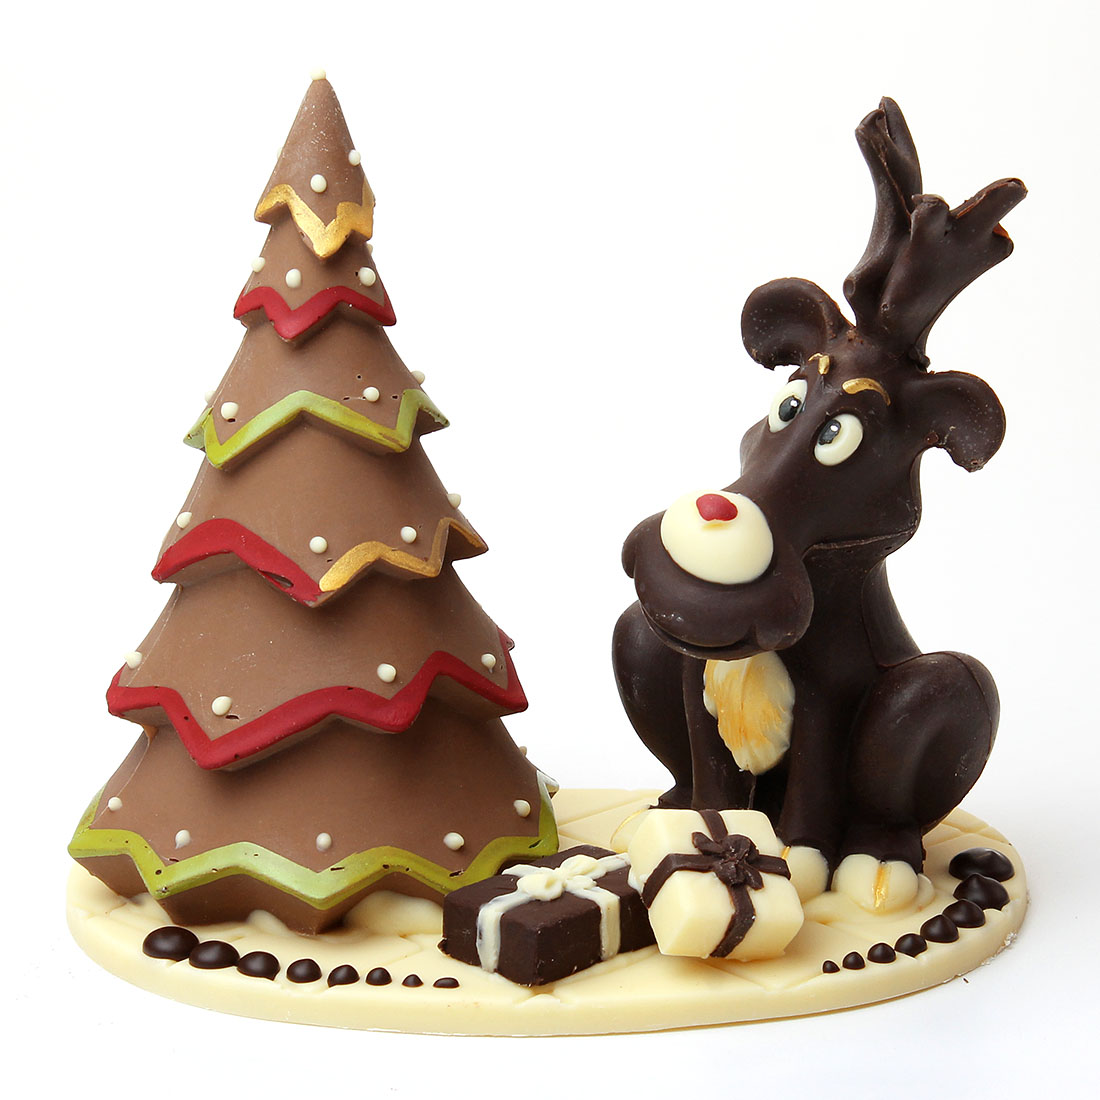 Regali Di Cioccolato Per Natale.Strenna Natalizia Soggetti In Cioccolato Per Natale